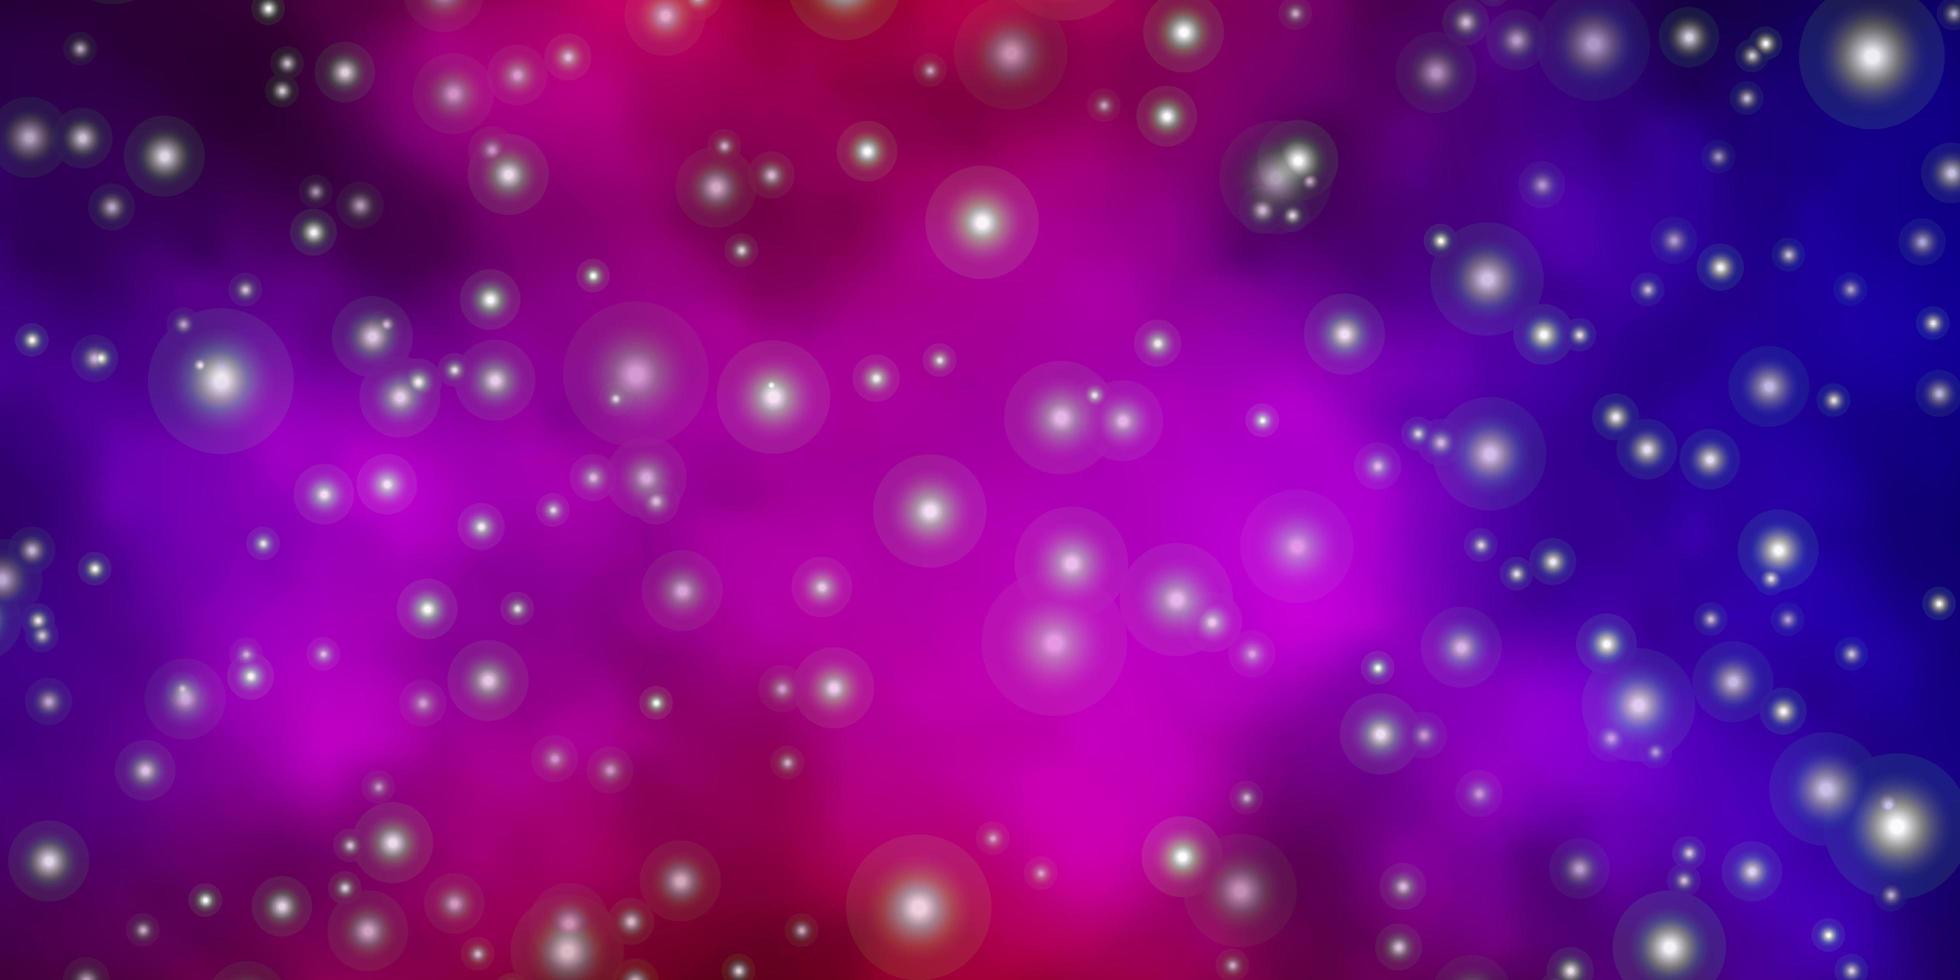 Plantilla de vector azul oscuro, rojo con estrellas de neón. Ilustración colorida brillante con estrellas grandes y pequeñas. patrón para envolver regalos.